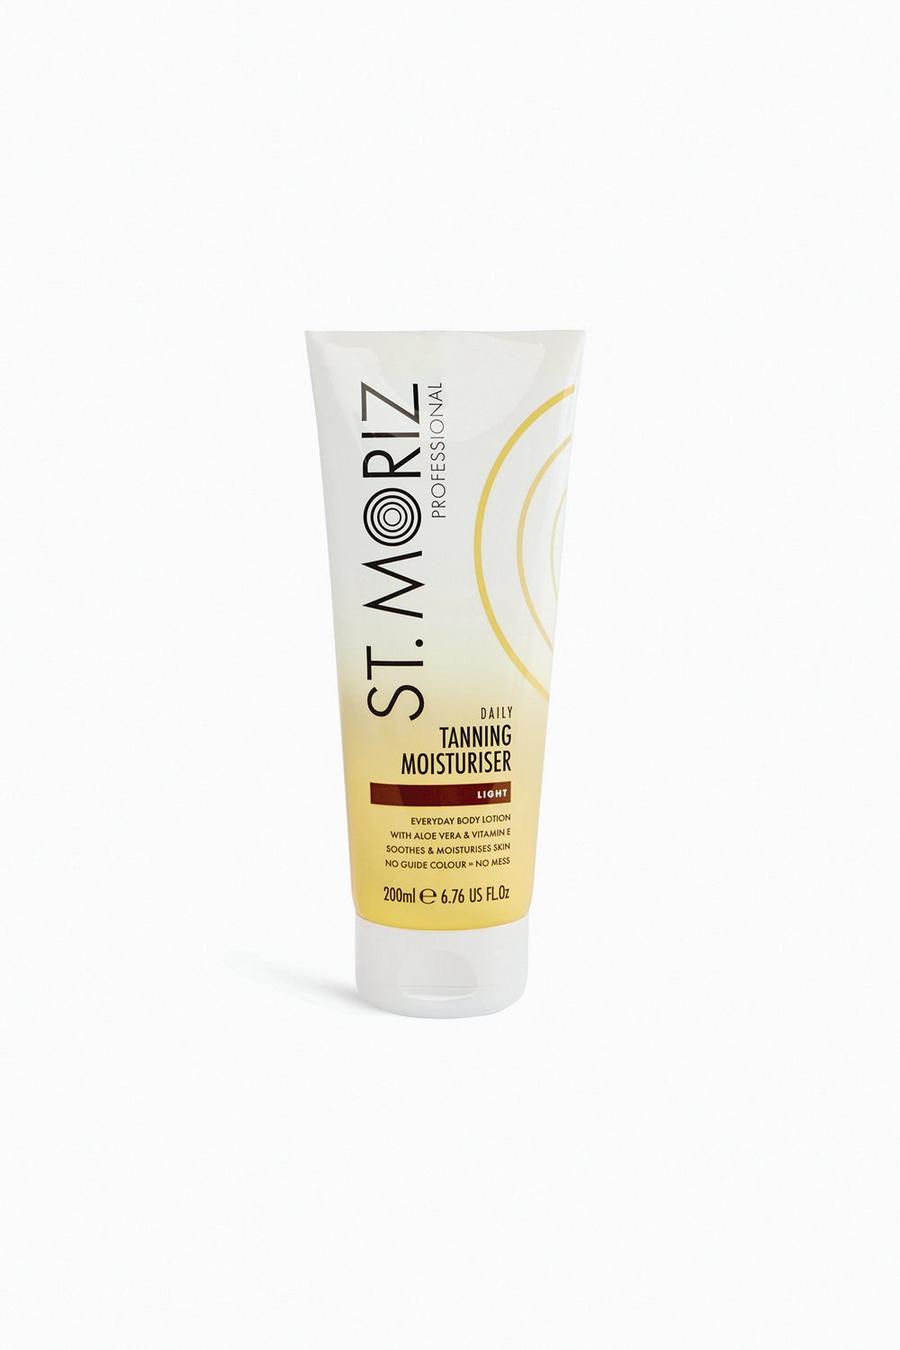 White St. Moriz Professional Daily Tanning Moisturiser Light 200ml